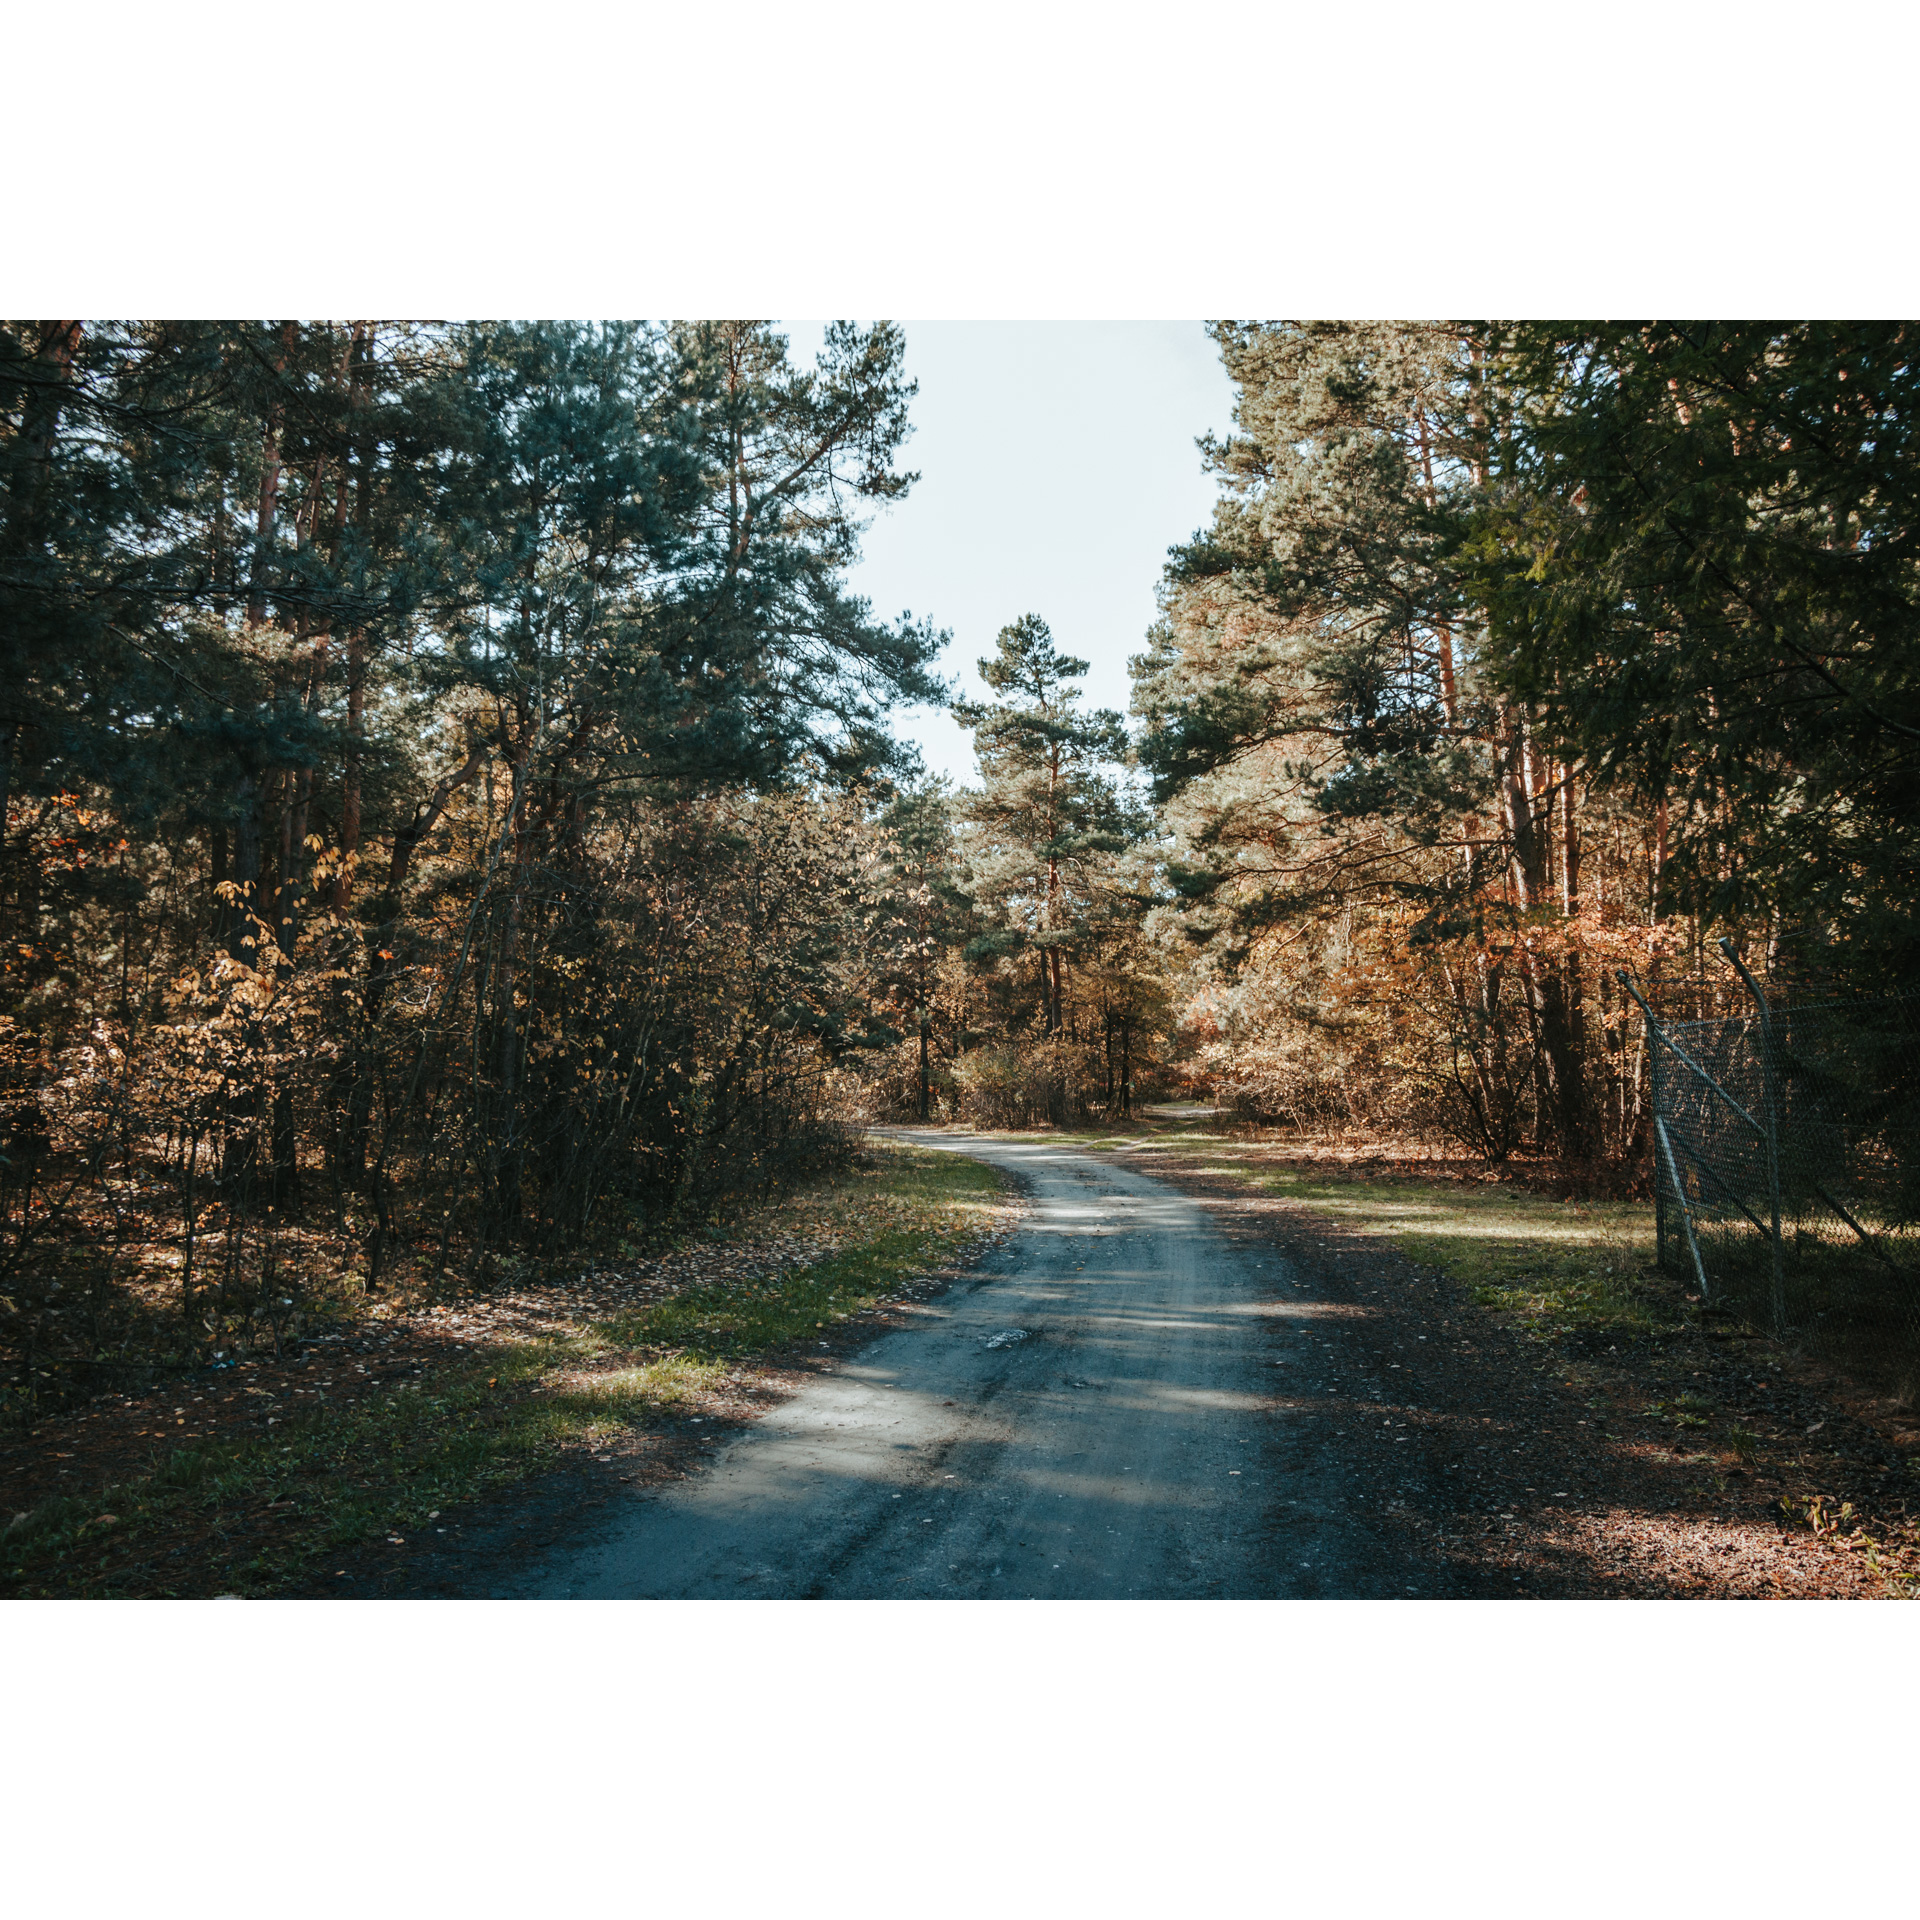 Piaszczysta droga skręcająca w lewo, prowadząca przez las